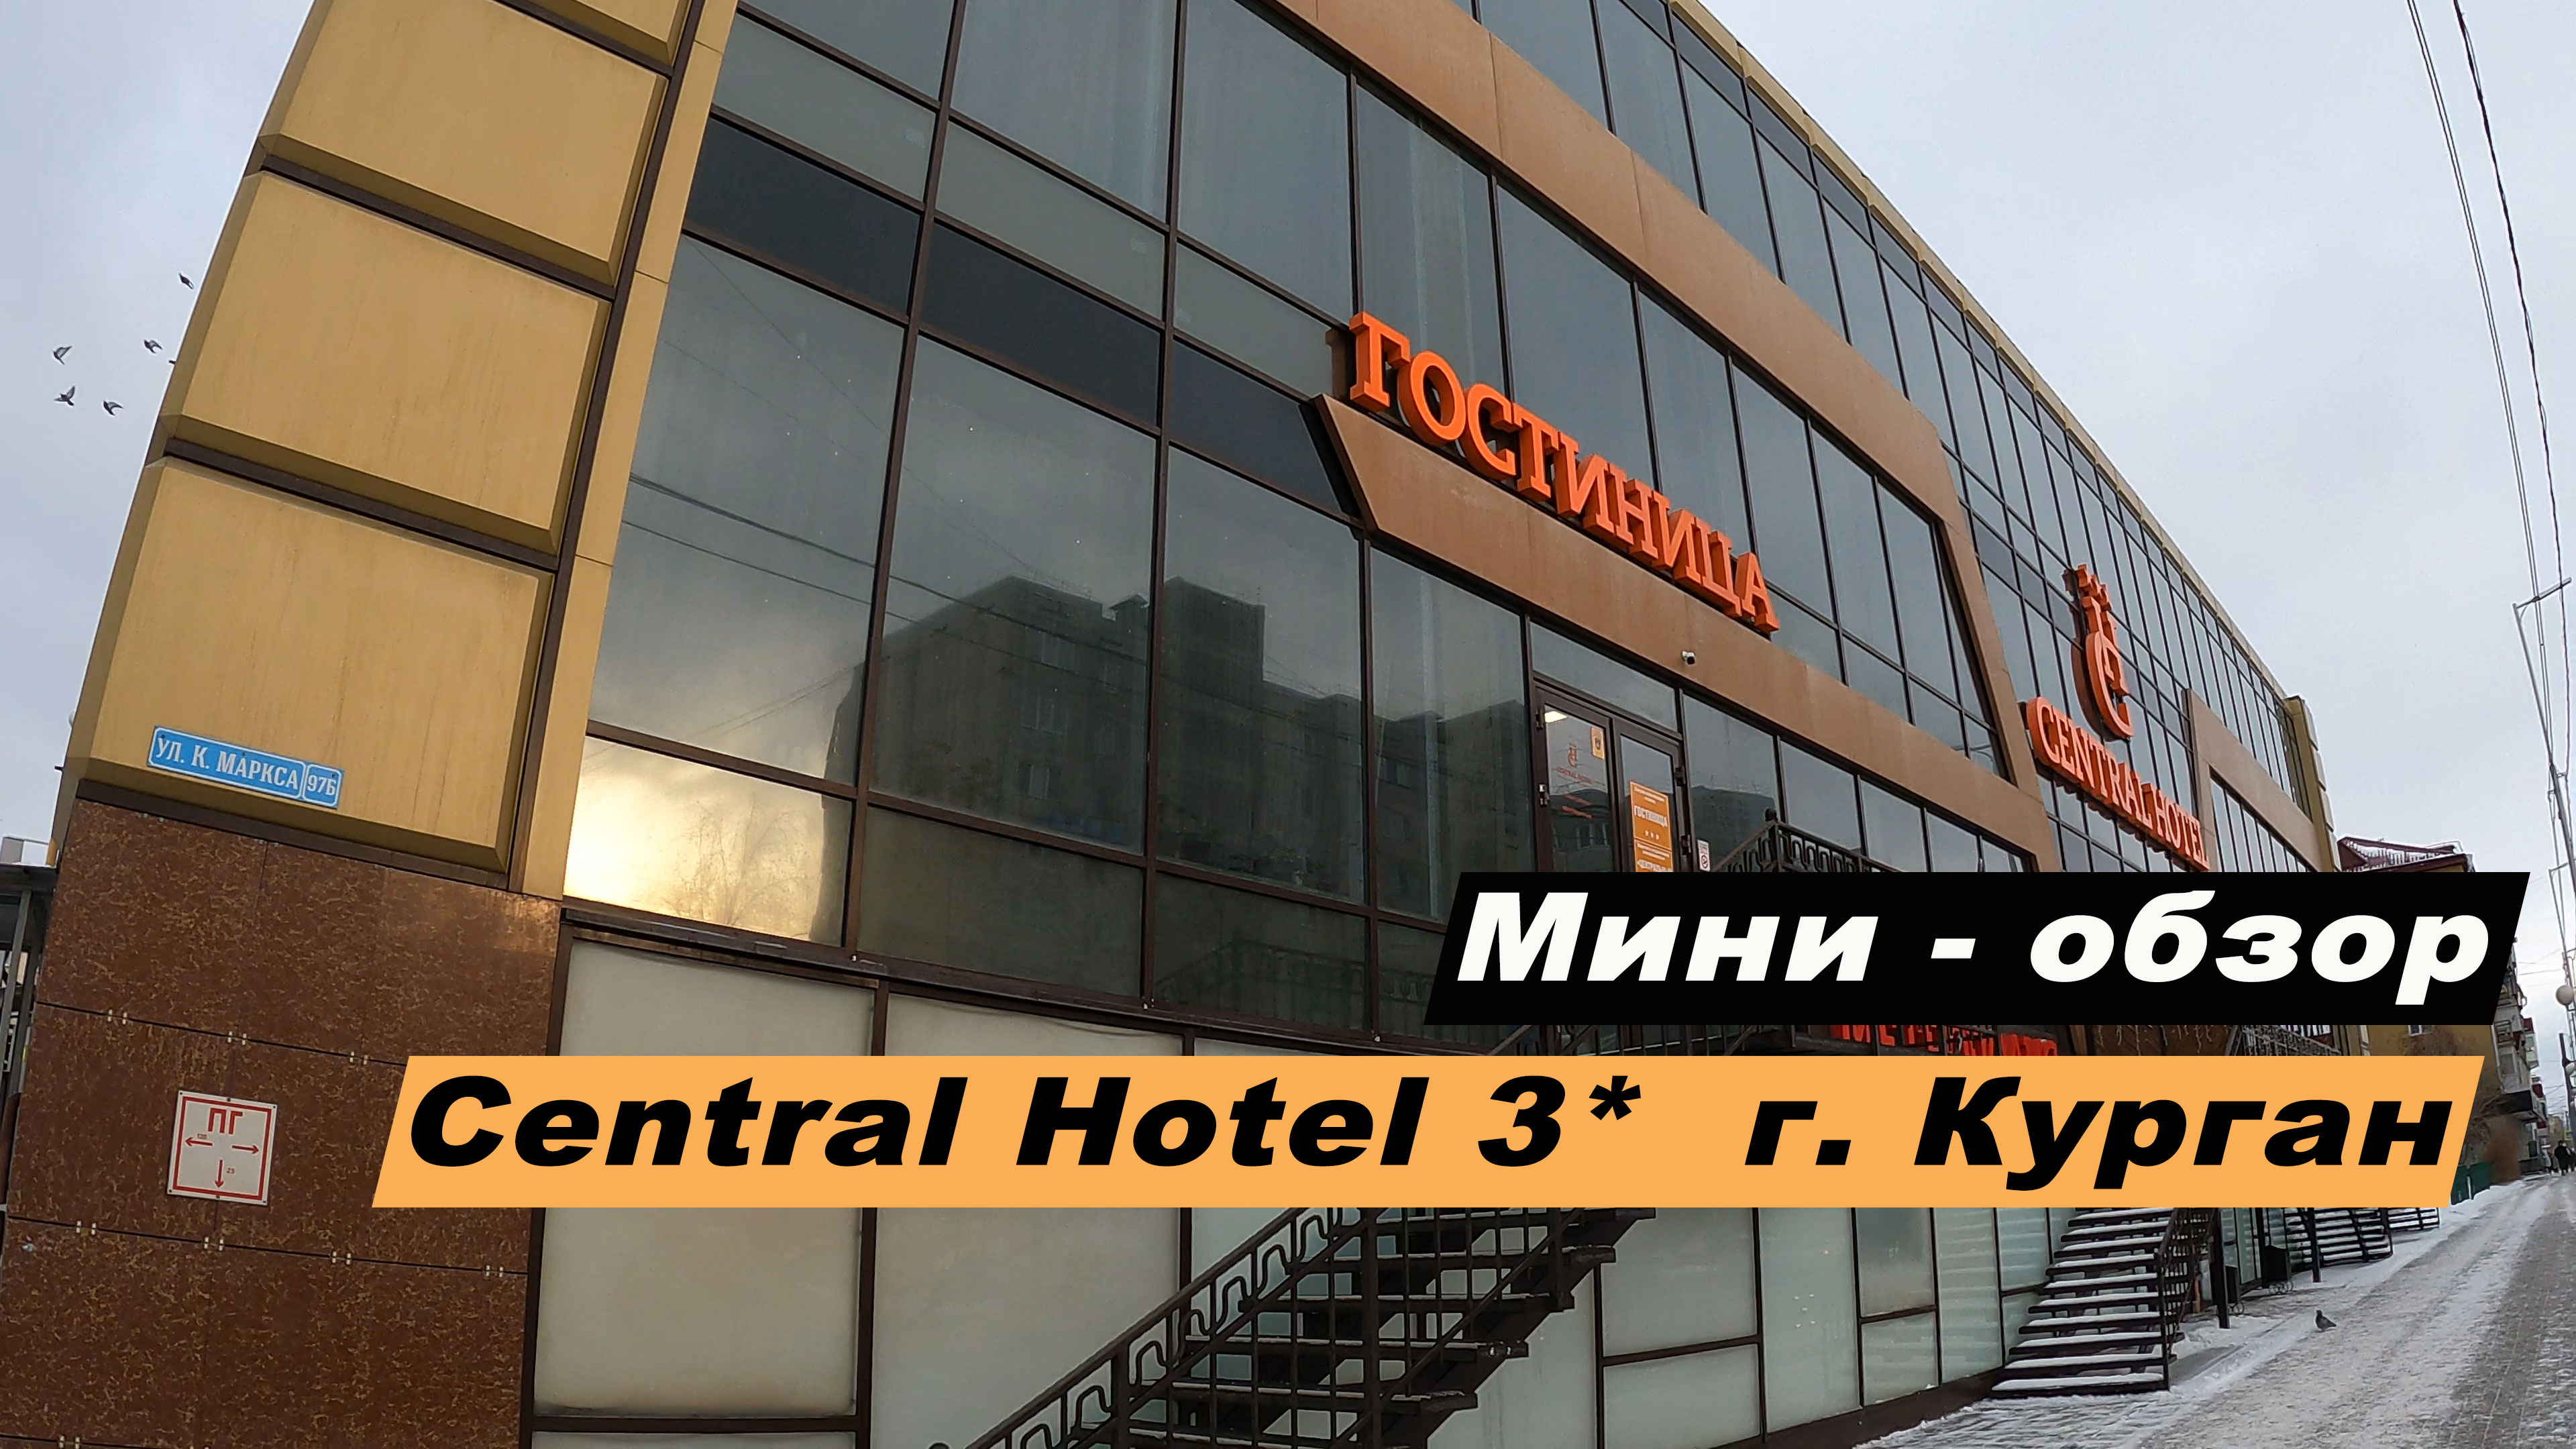 Мини-обзор отеля Central Hotel  (Централь Отель)  в г. Кургане, Курганской области. Hotel Central.